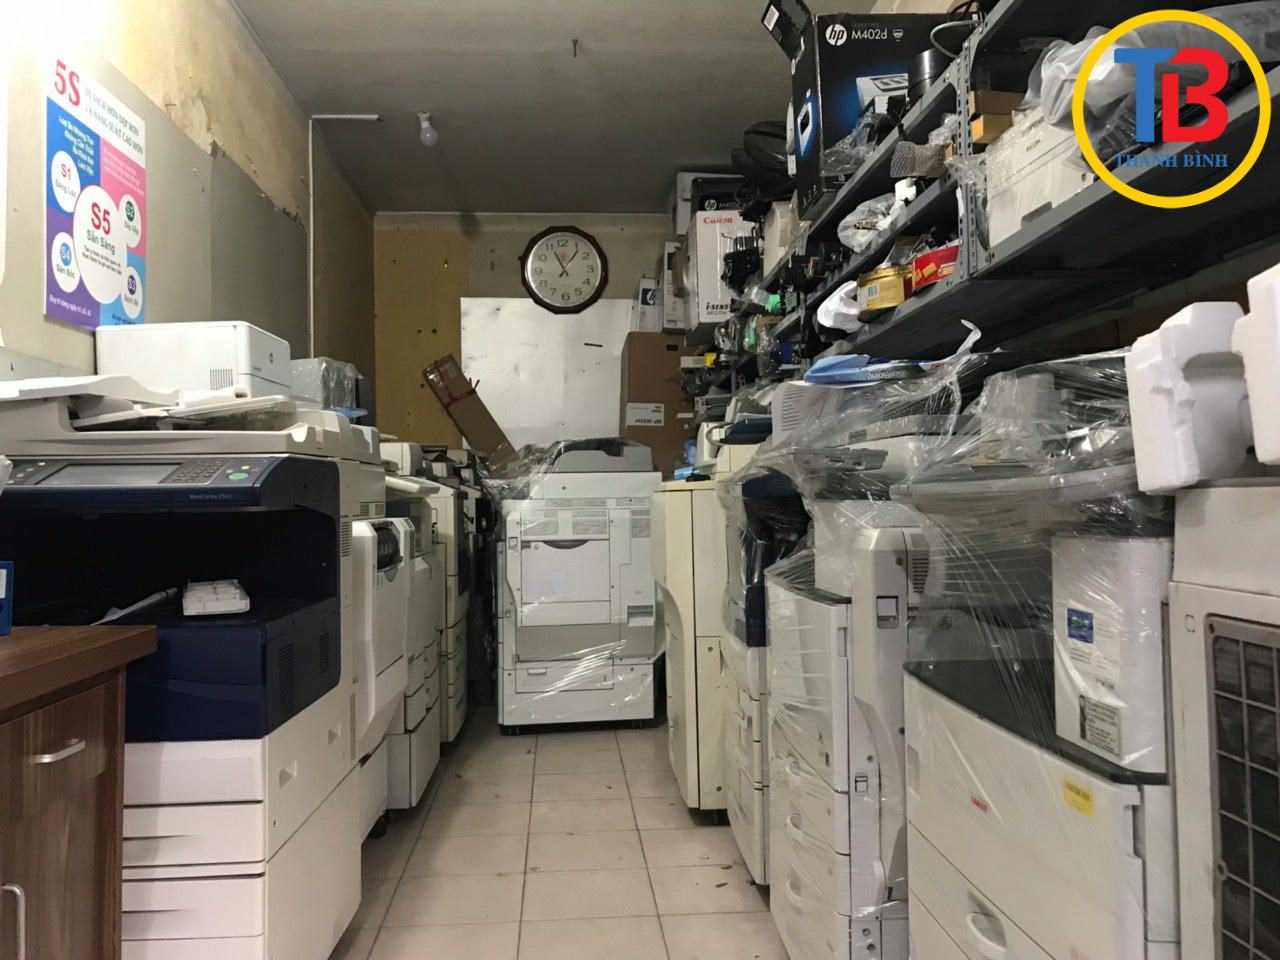 Dịch vụ sửa chữa máy photocopy tại Hà Nội uy tín